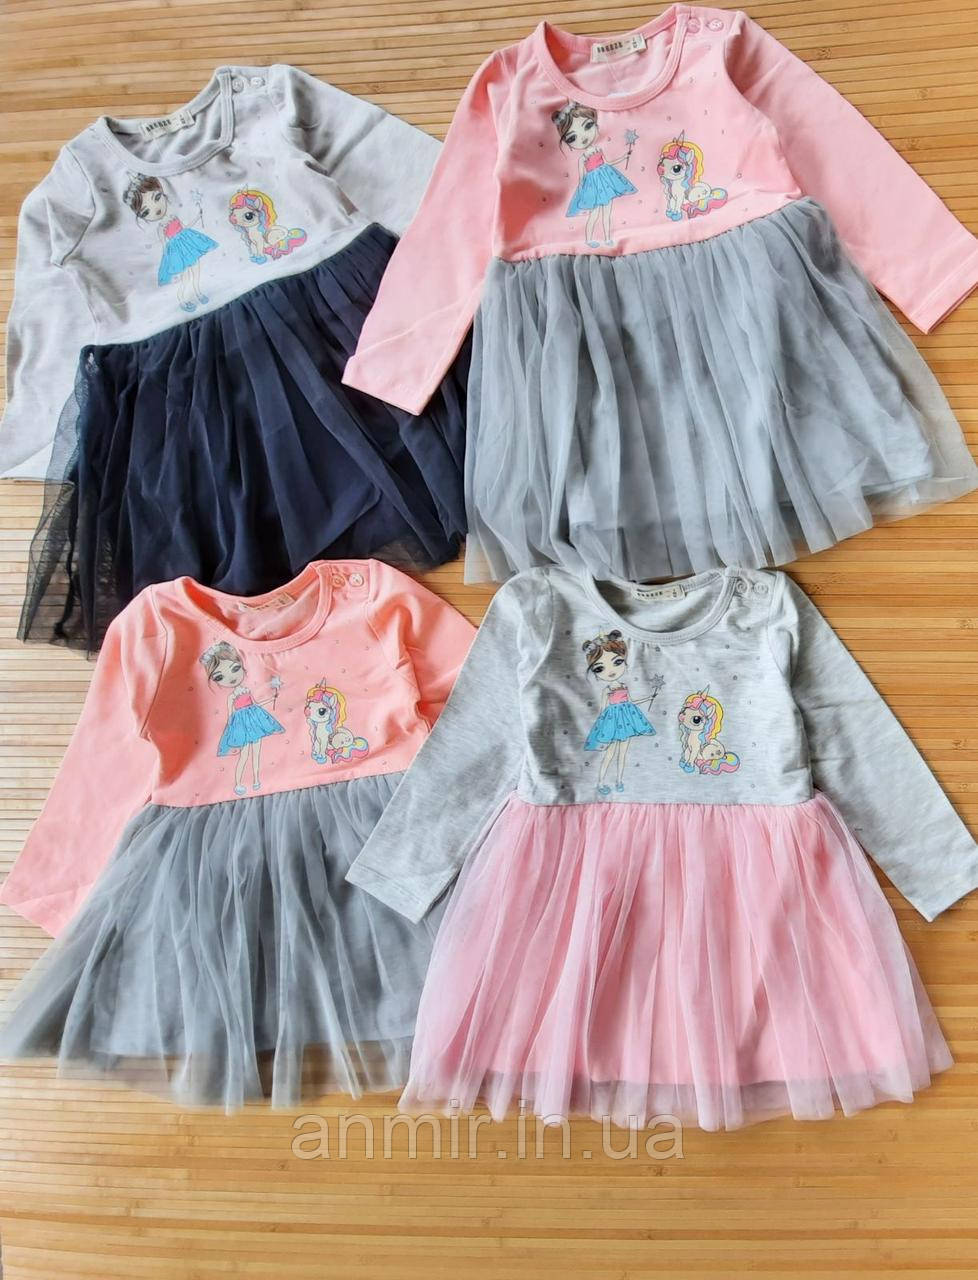 Дитяче плаття UNICORN для дівчинки 2-6 років, колір уточнюйте під час замовлення